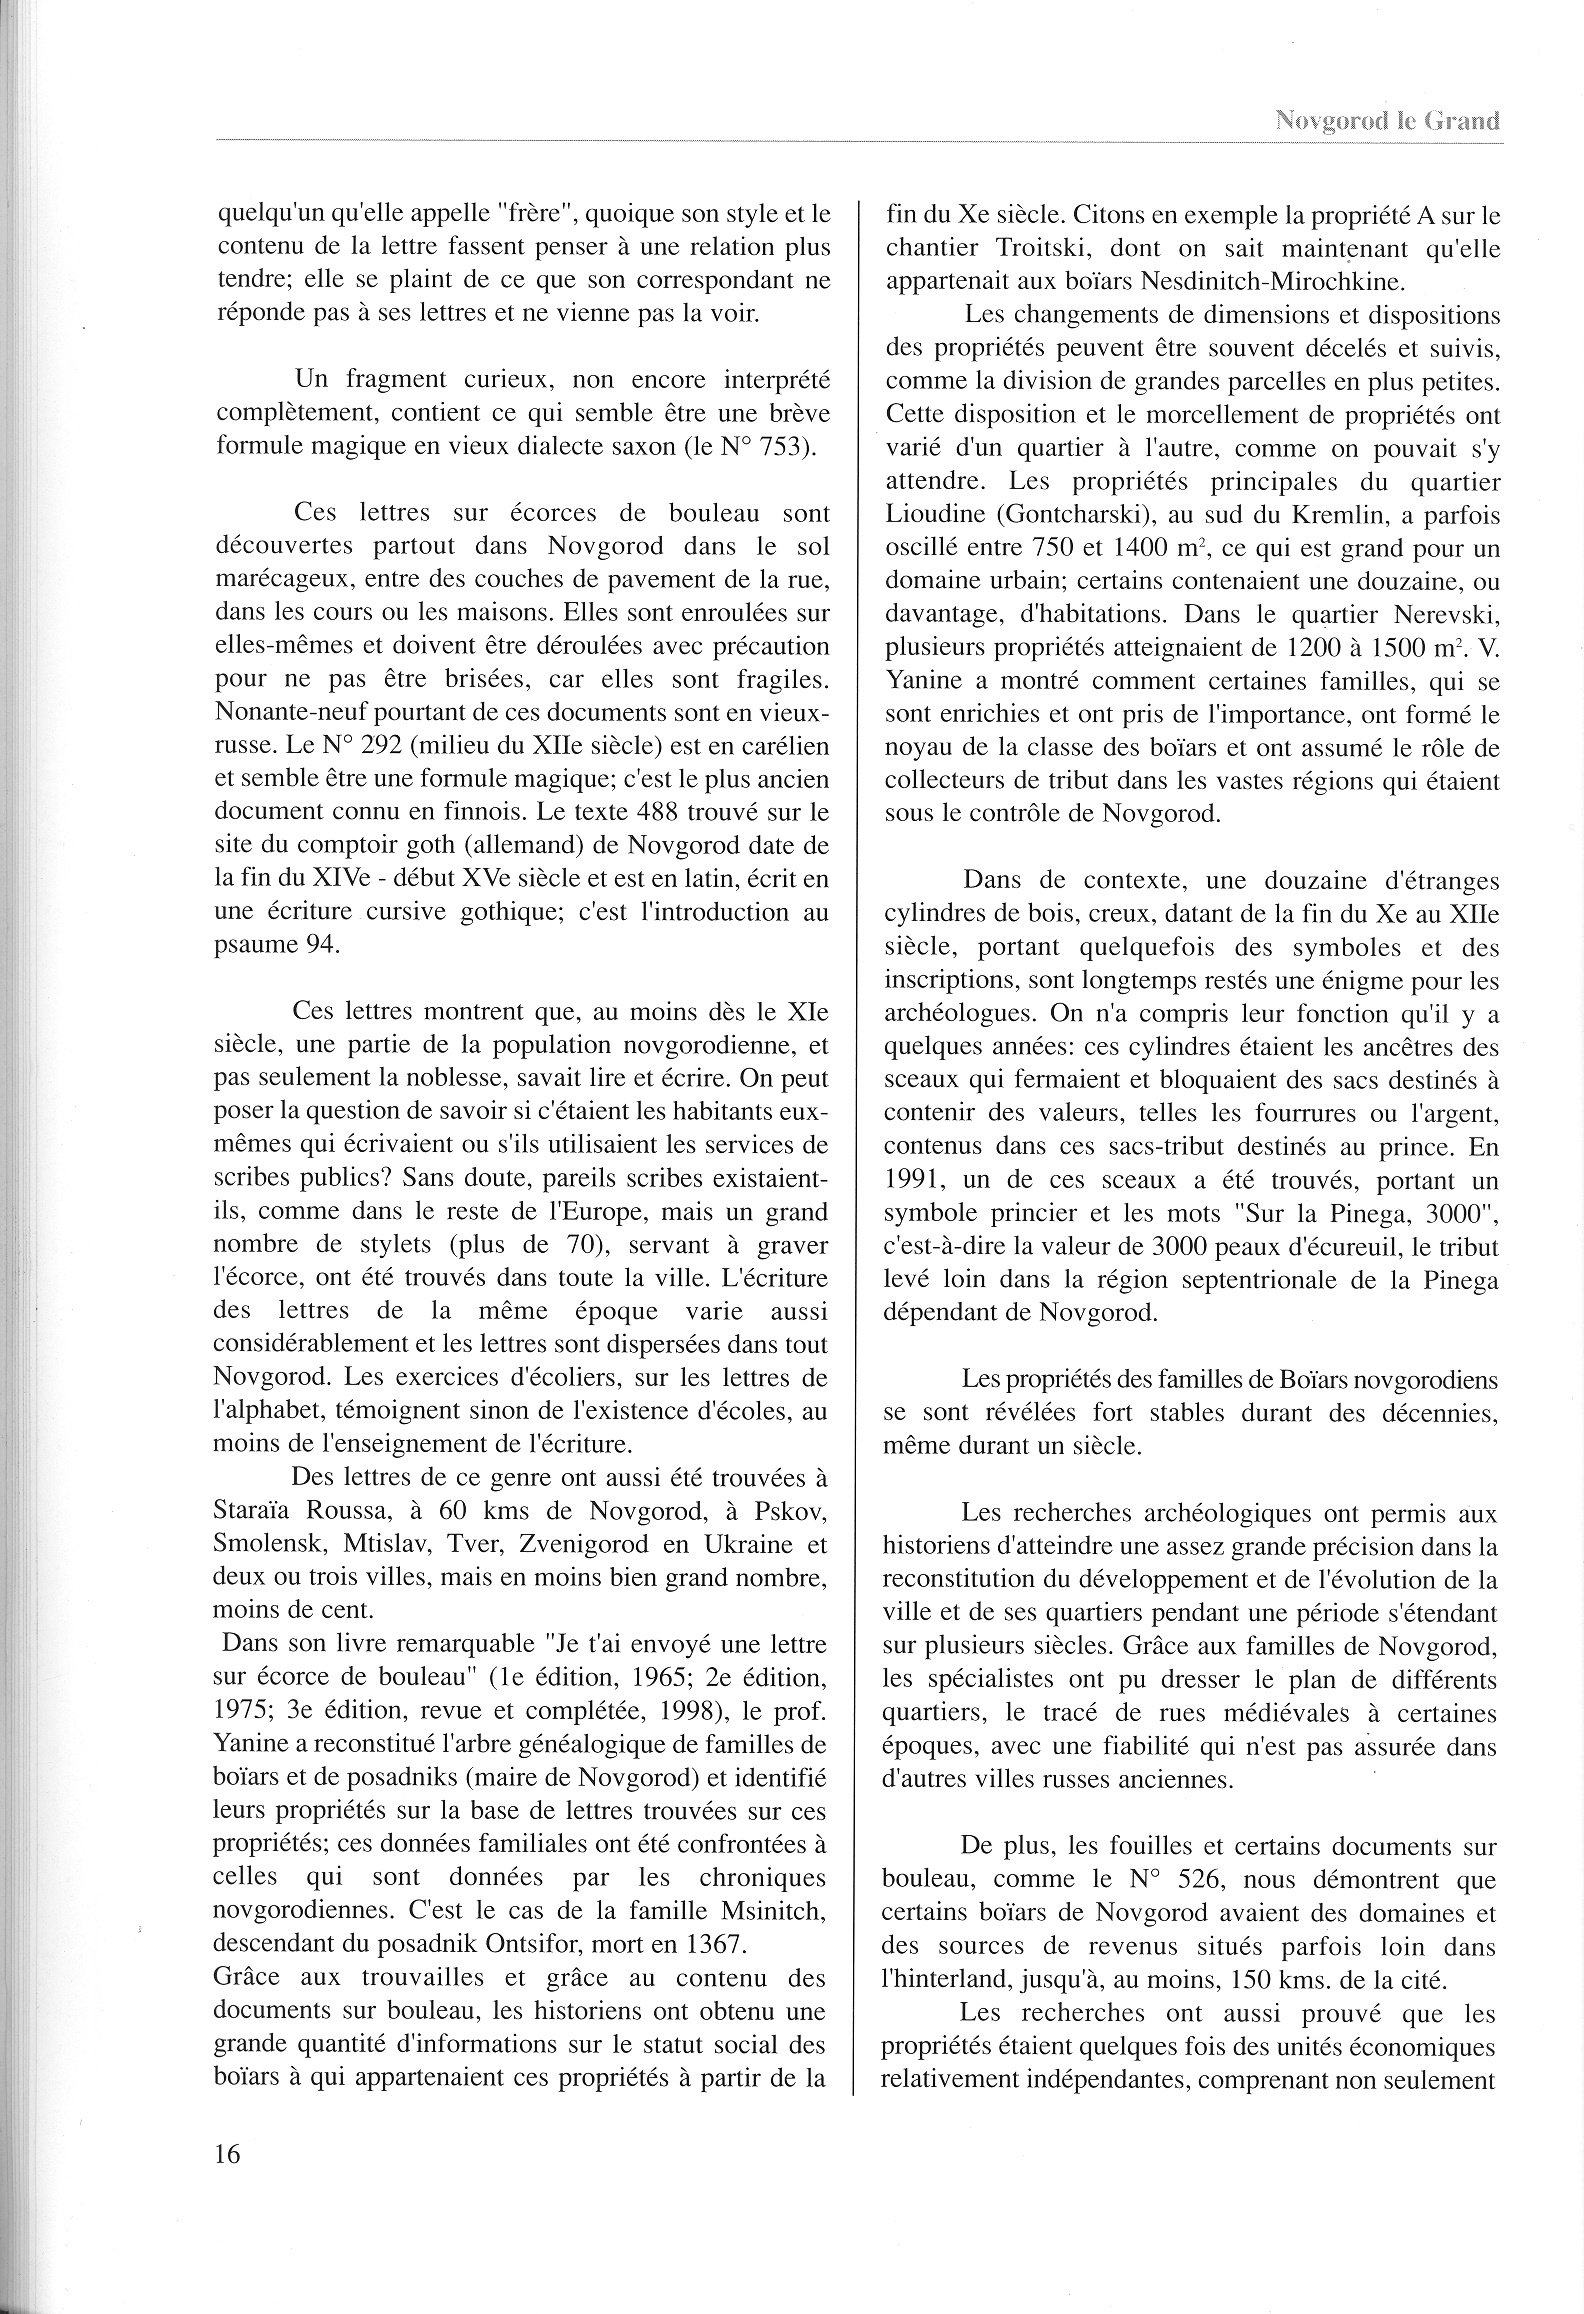 FPPR Revue 01 2002 18. Page 16. Novgorod le Grand. Anatomie d|une métropole médiévale russe par Jean Blankoff